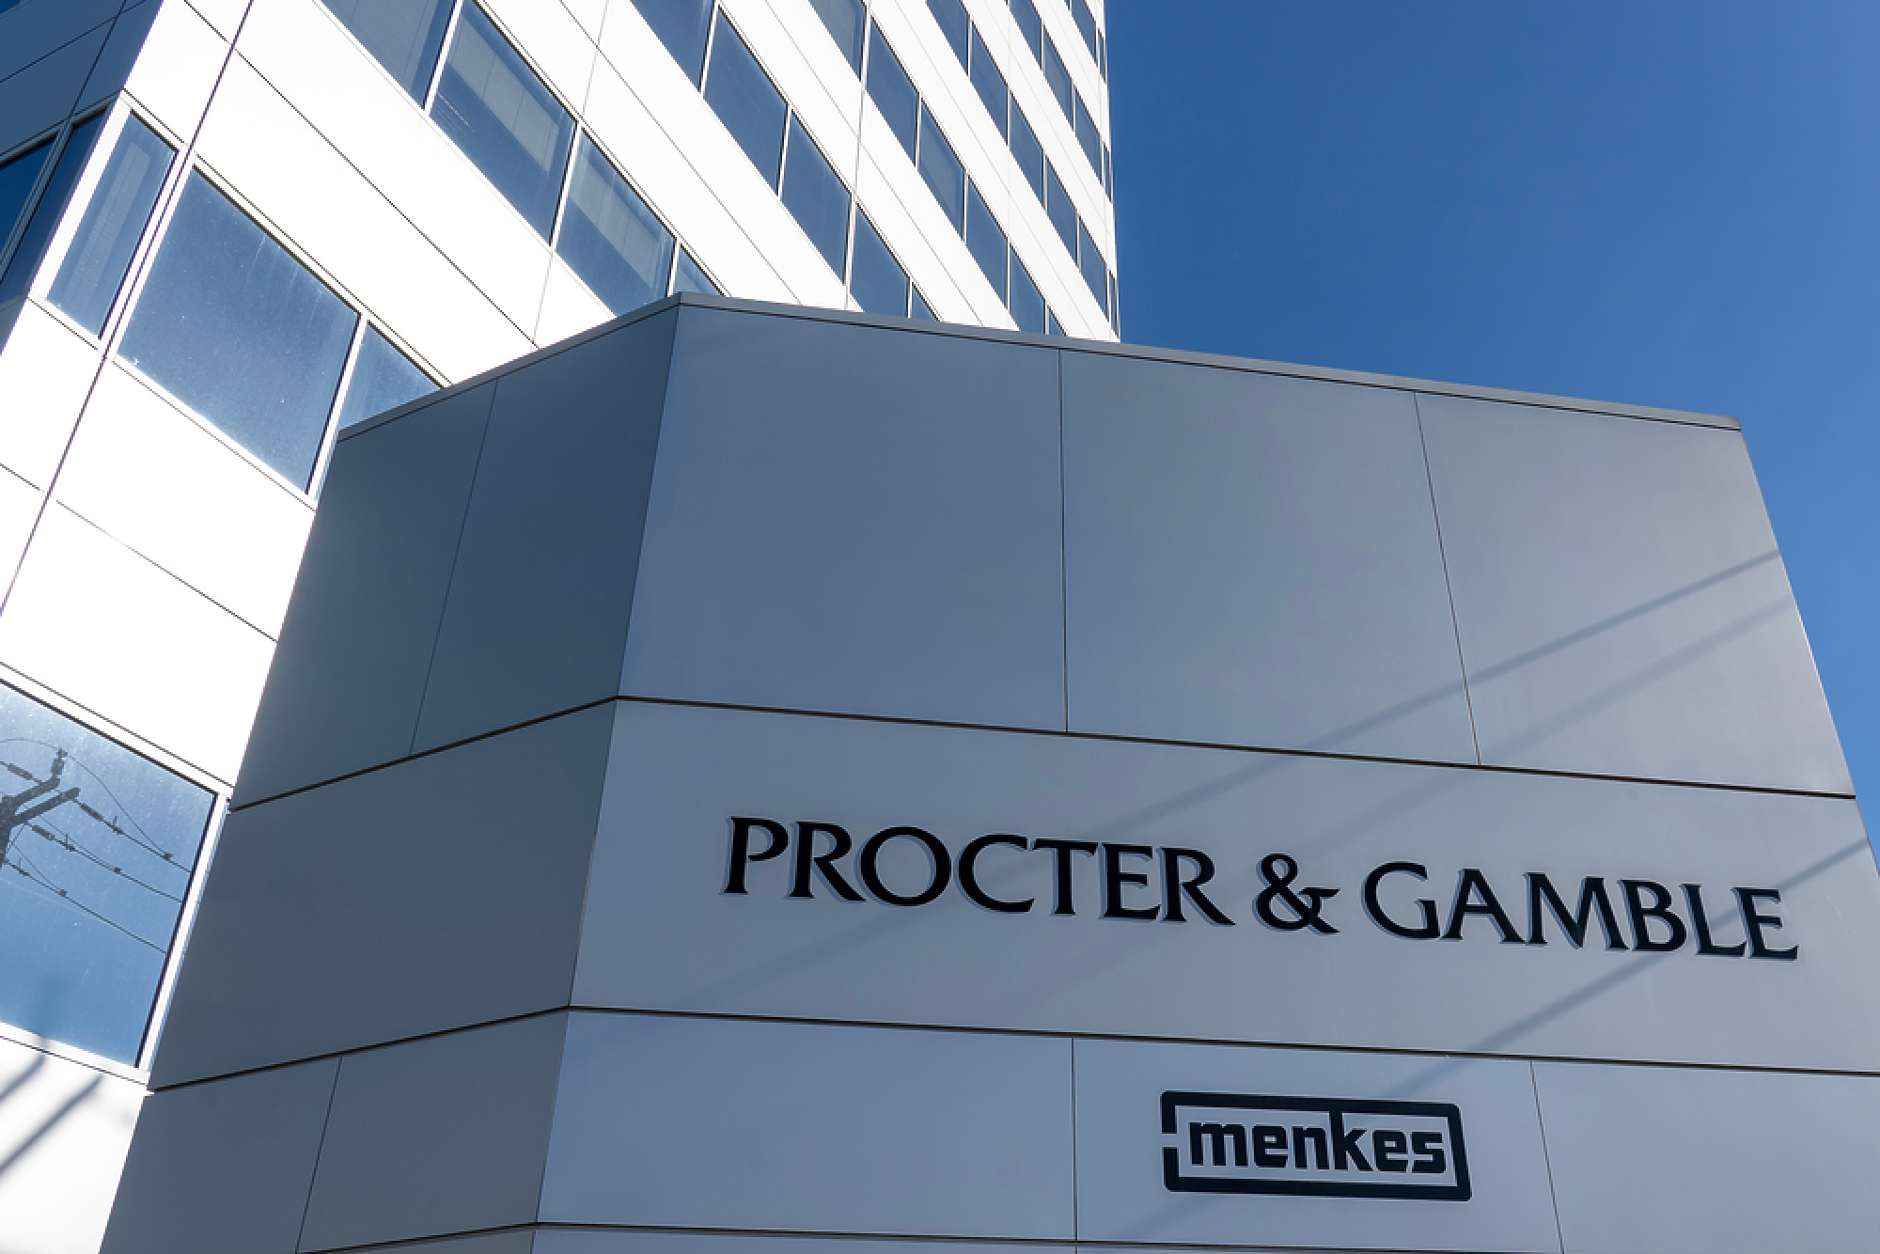 Procter & Gamble ще отпише активи за $2,5 млрд. като част от преструктурирането на бизнеса